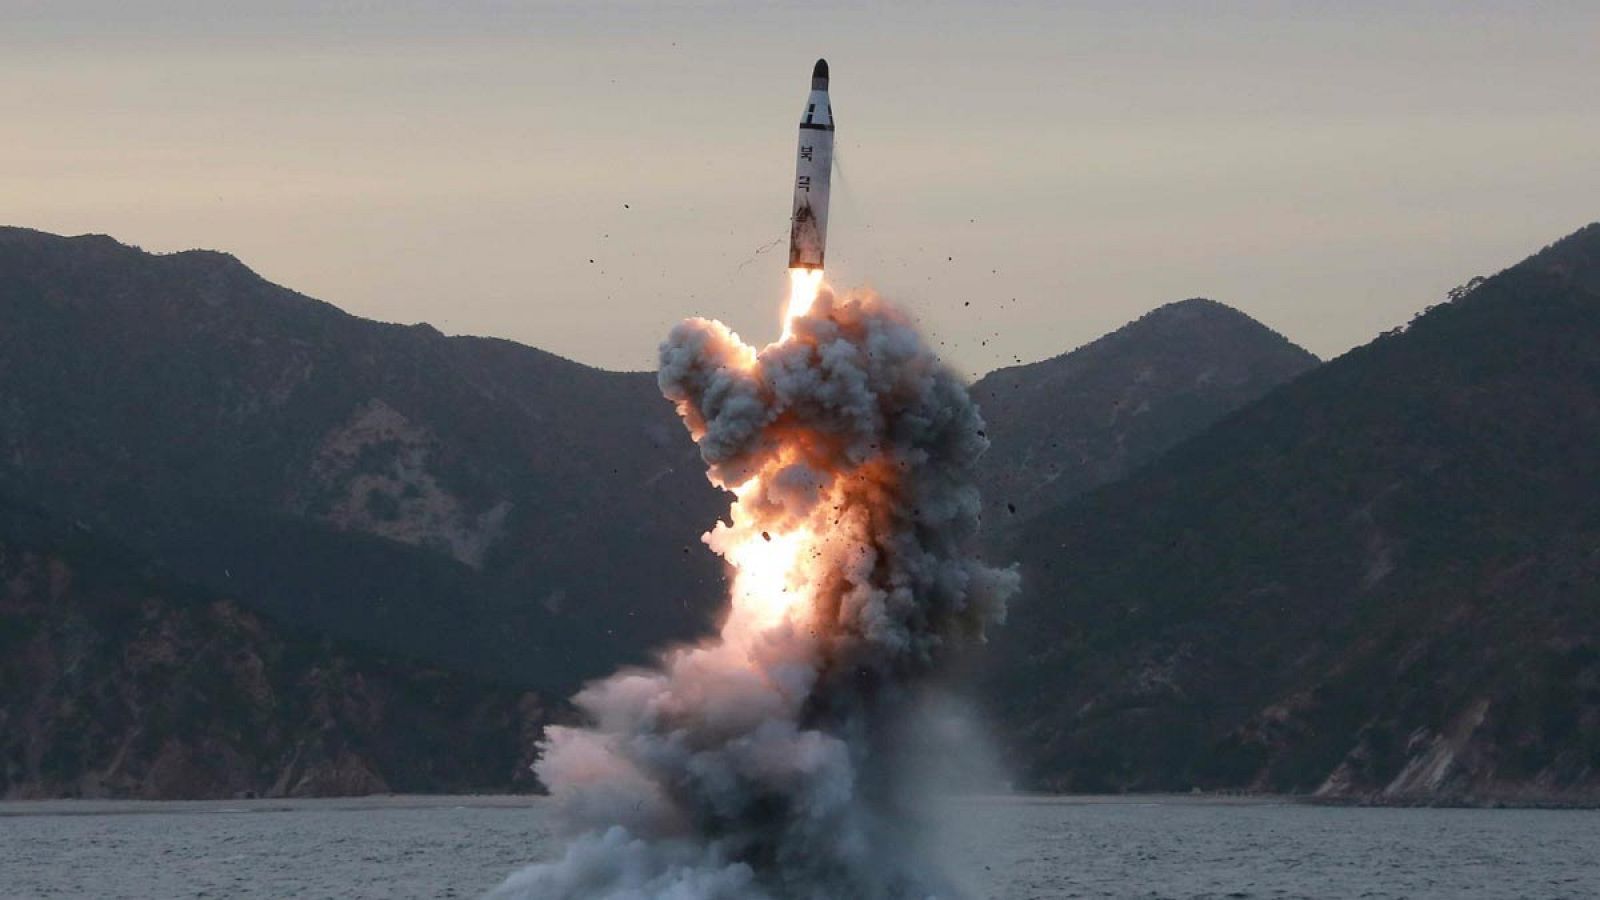 Fotografía de archivo que muestra el lanzamiento de prueba de un misil balístico submarino, en un lugar sin identificar, en Corea del Norte